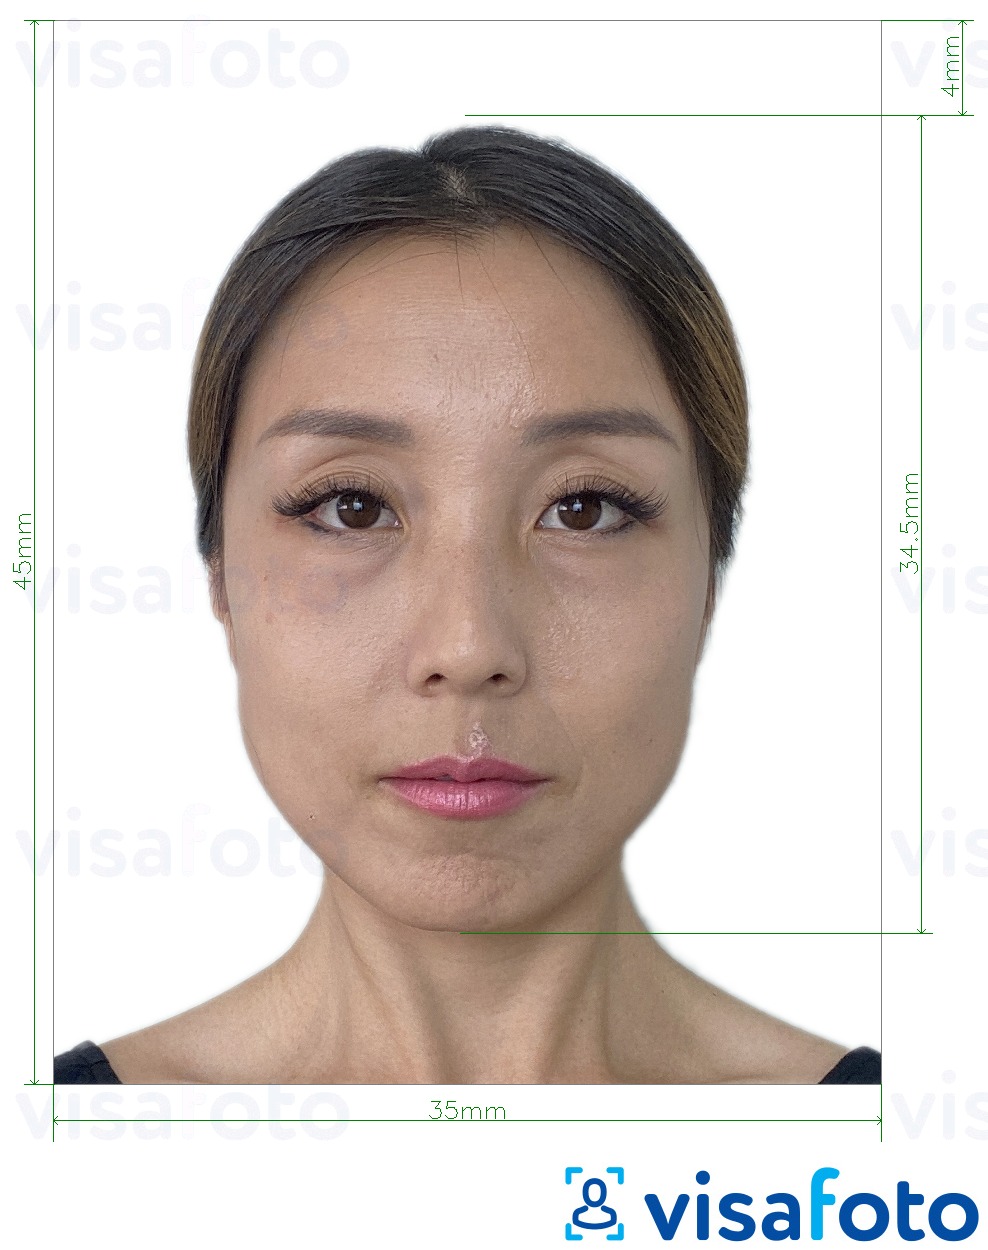 Exemplu de fotografie pentru Cartea de identitate rezidentă din Macao (BIR) 45x35 mm cu aceeași dimensiune indicată